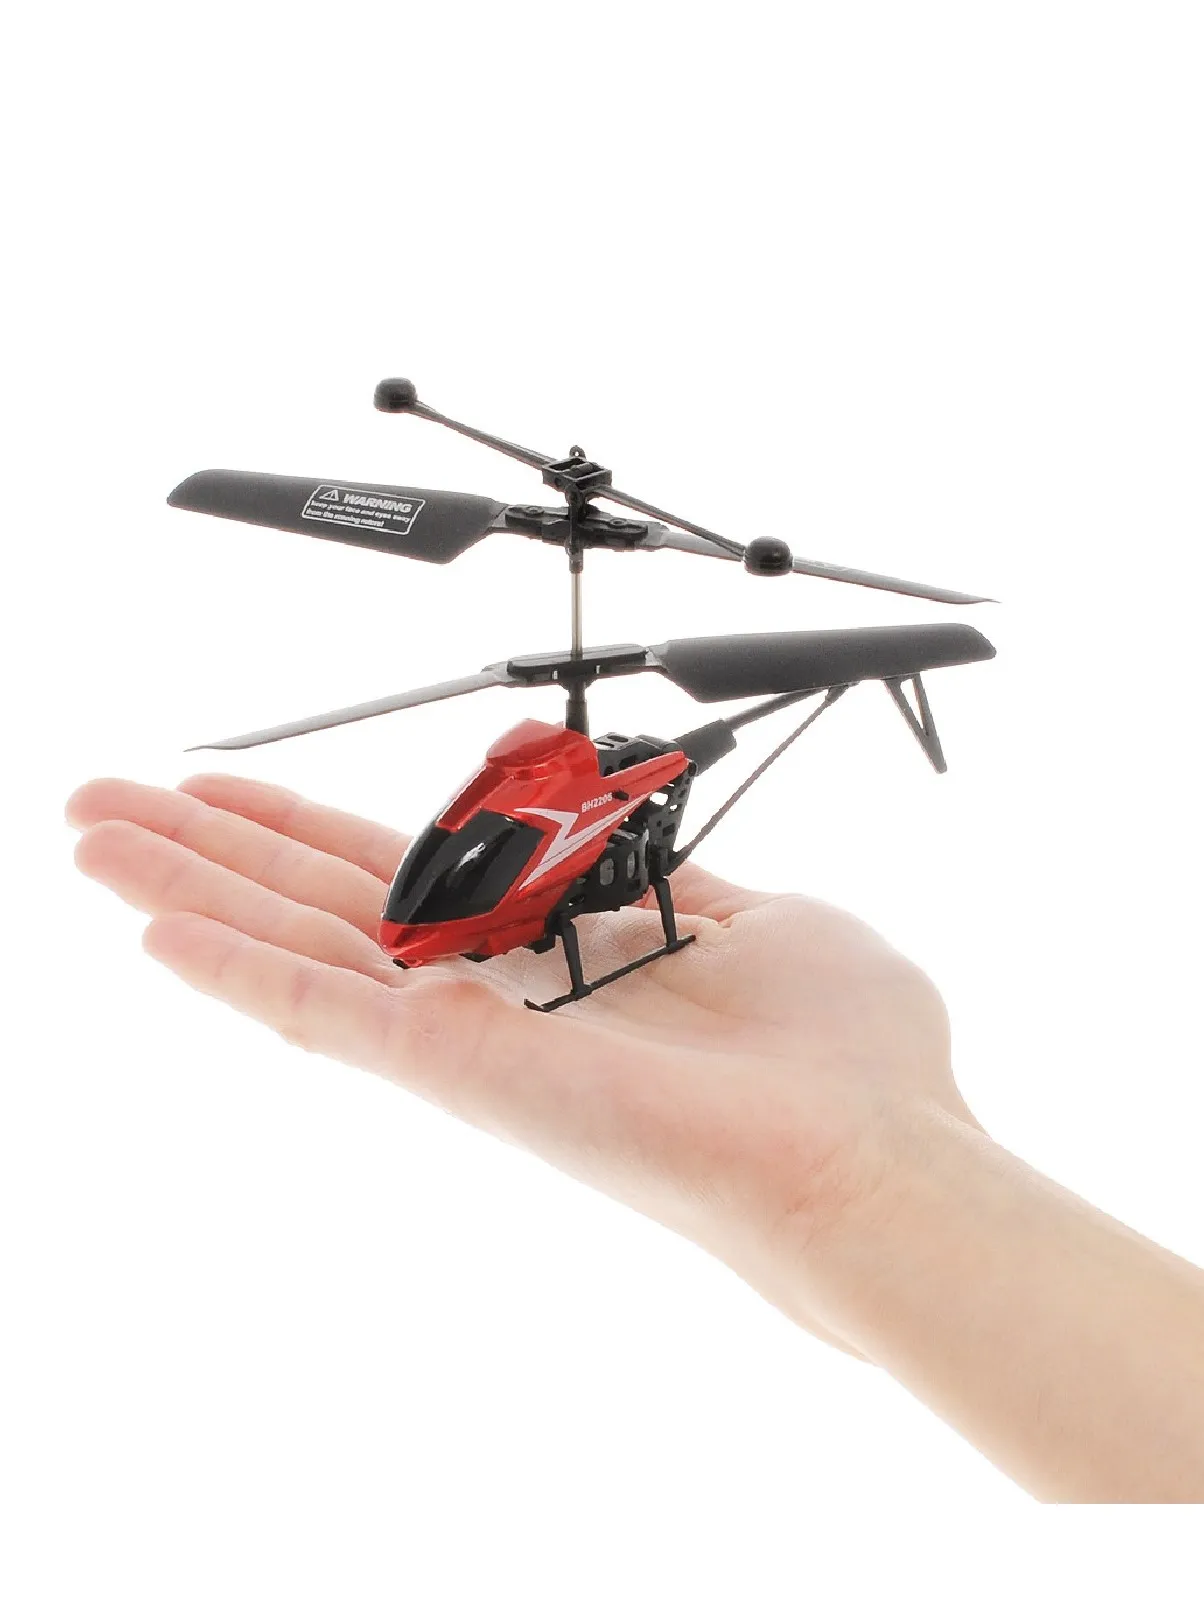 Кот вертолет игрушка. Вертолет Властелин небес Пчелка (BH 2206) 30 см. Детский радиоуправляемый вертолет bh2206. Вертолет Вн 2206. Вертолёт на пульте управления bh3327.